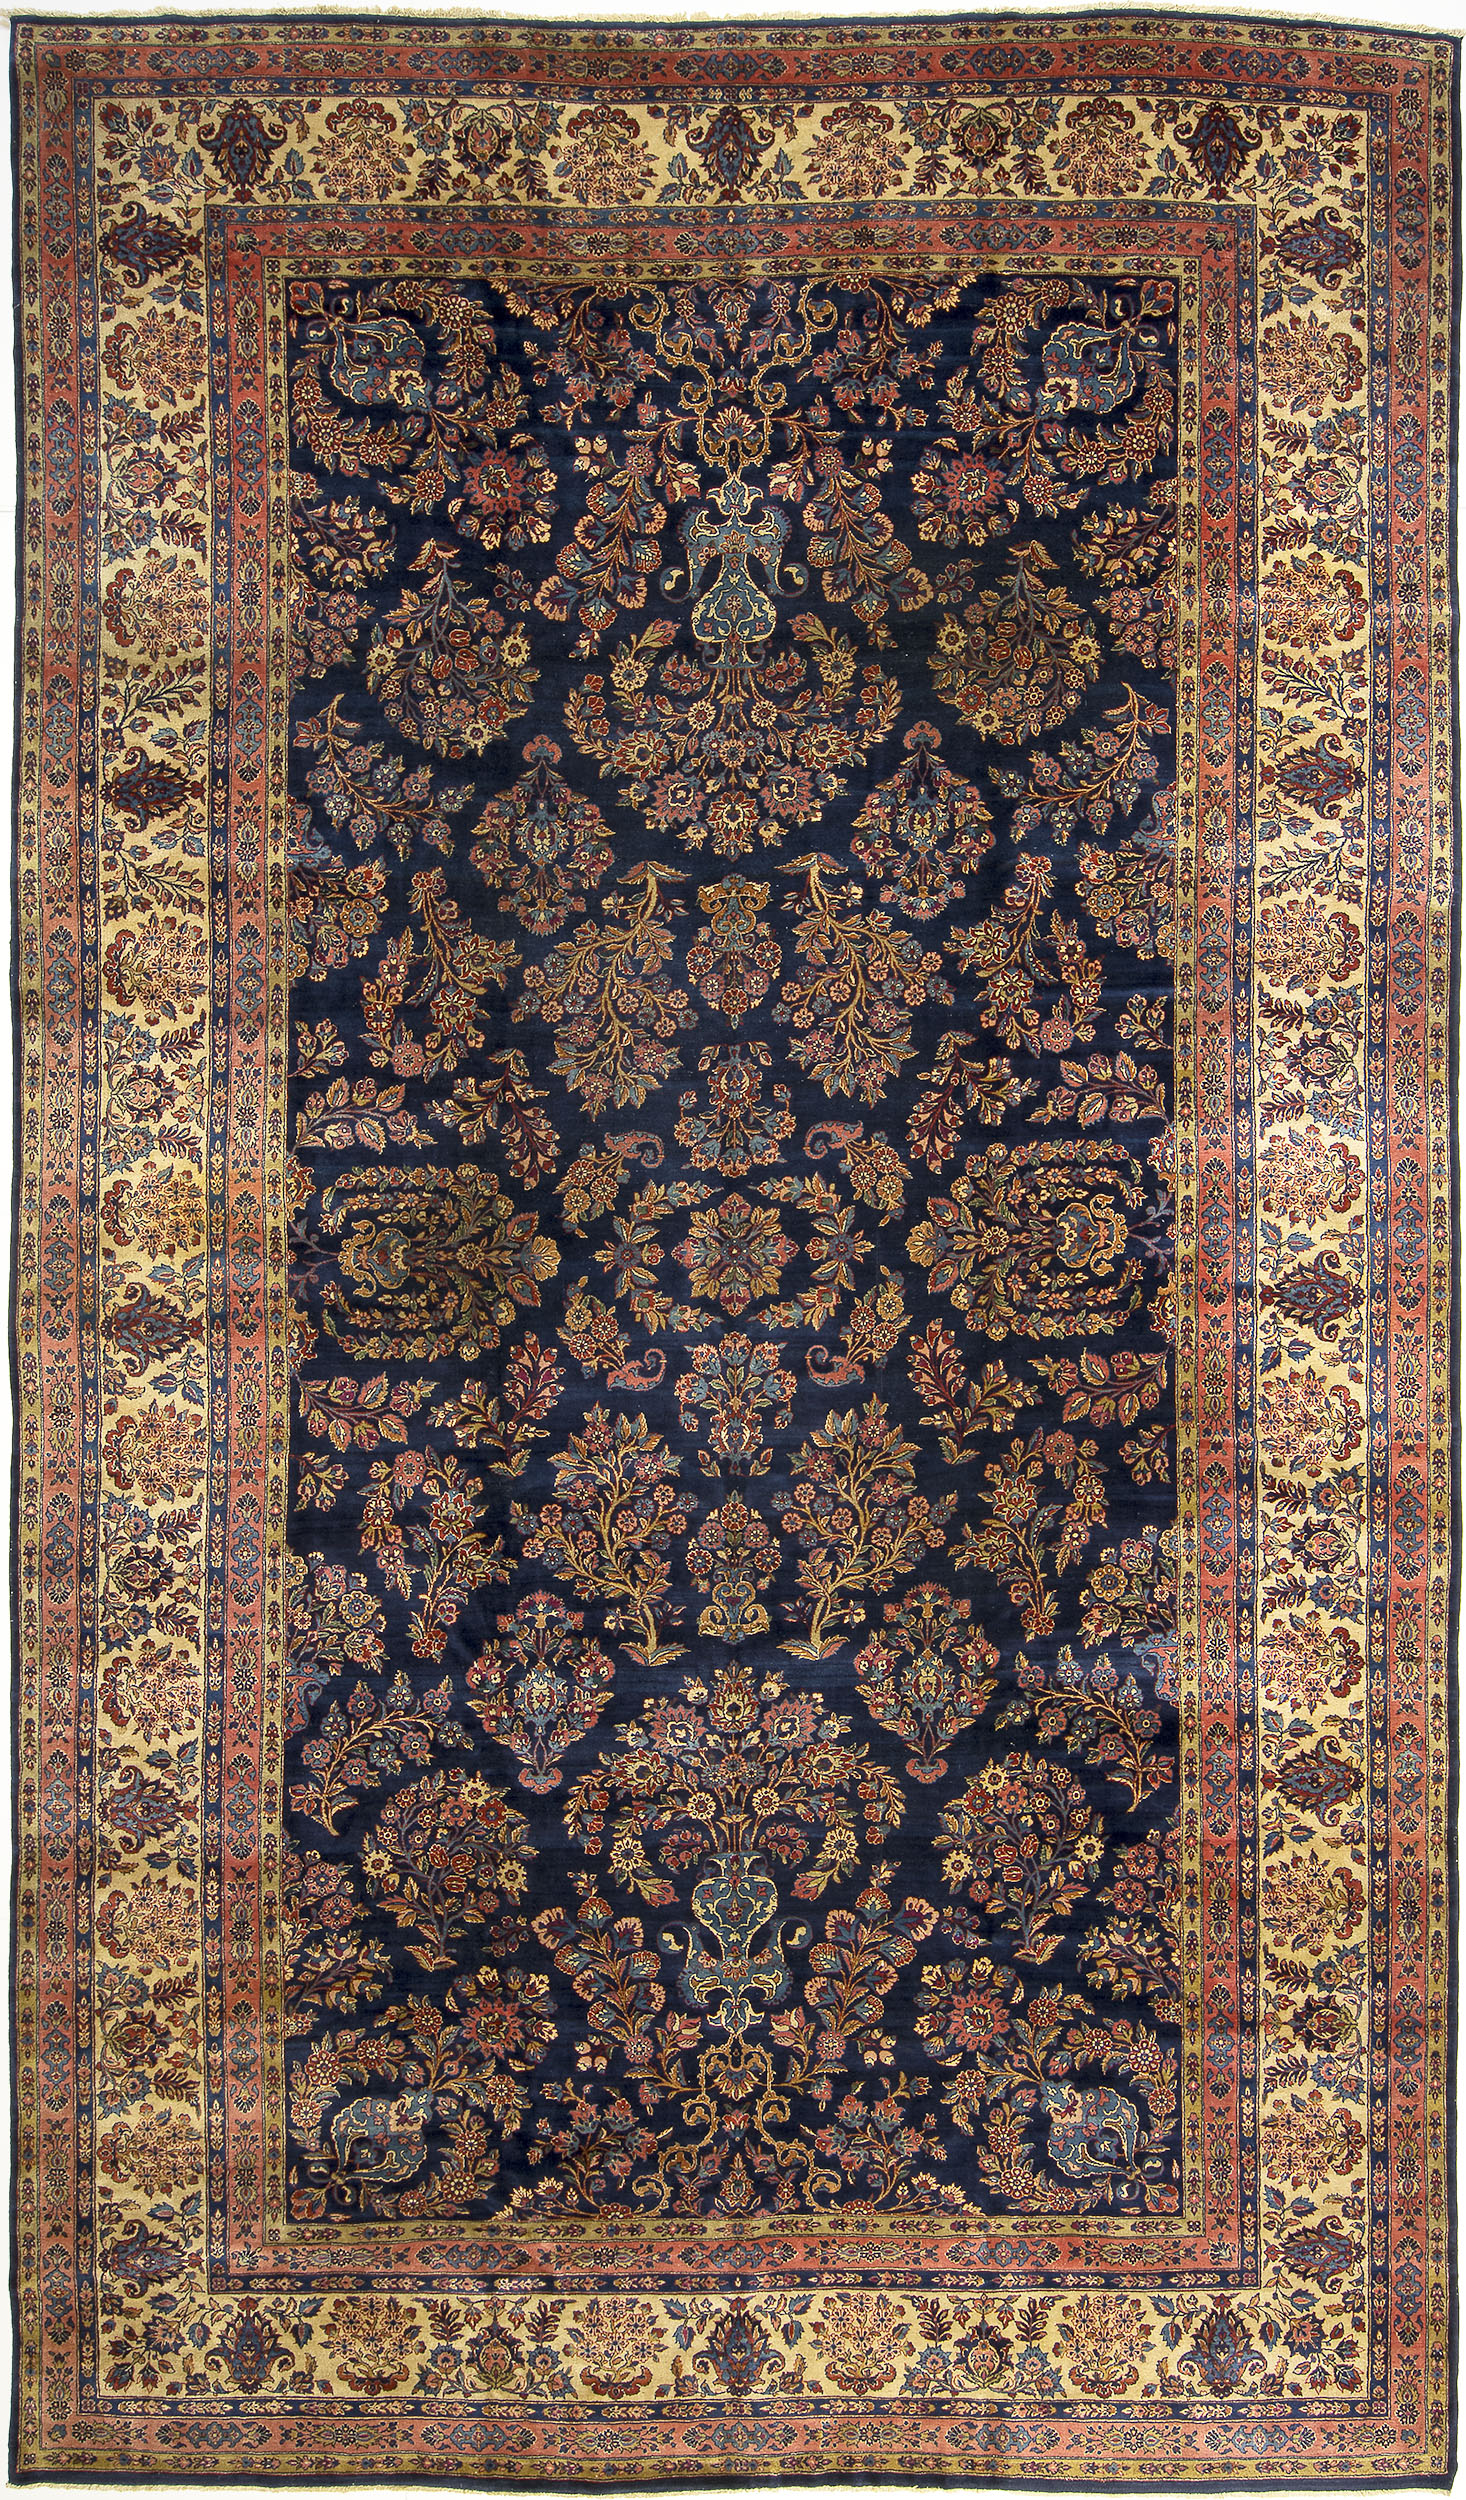 Kashan Carpet 17' 6" x 10' 2" 